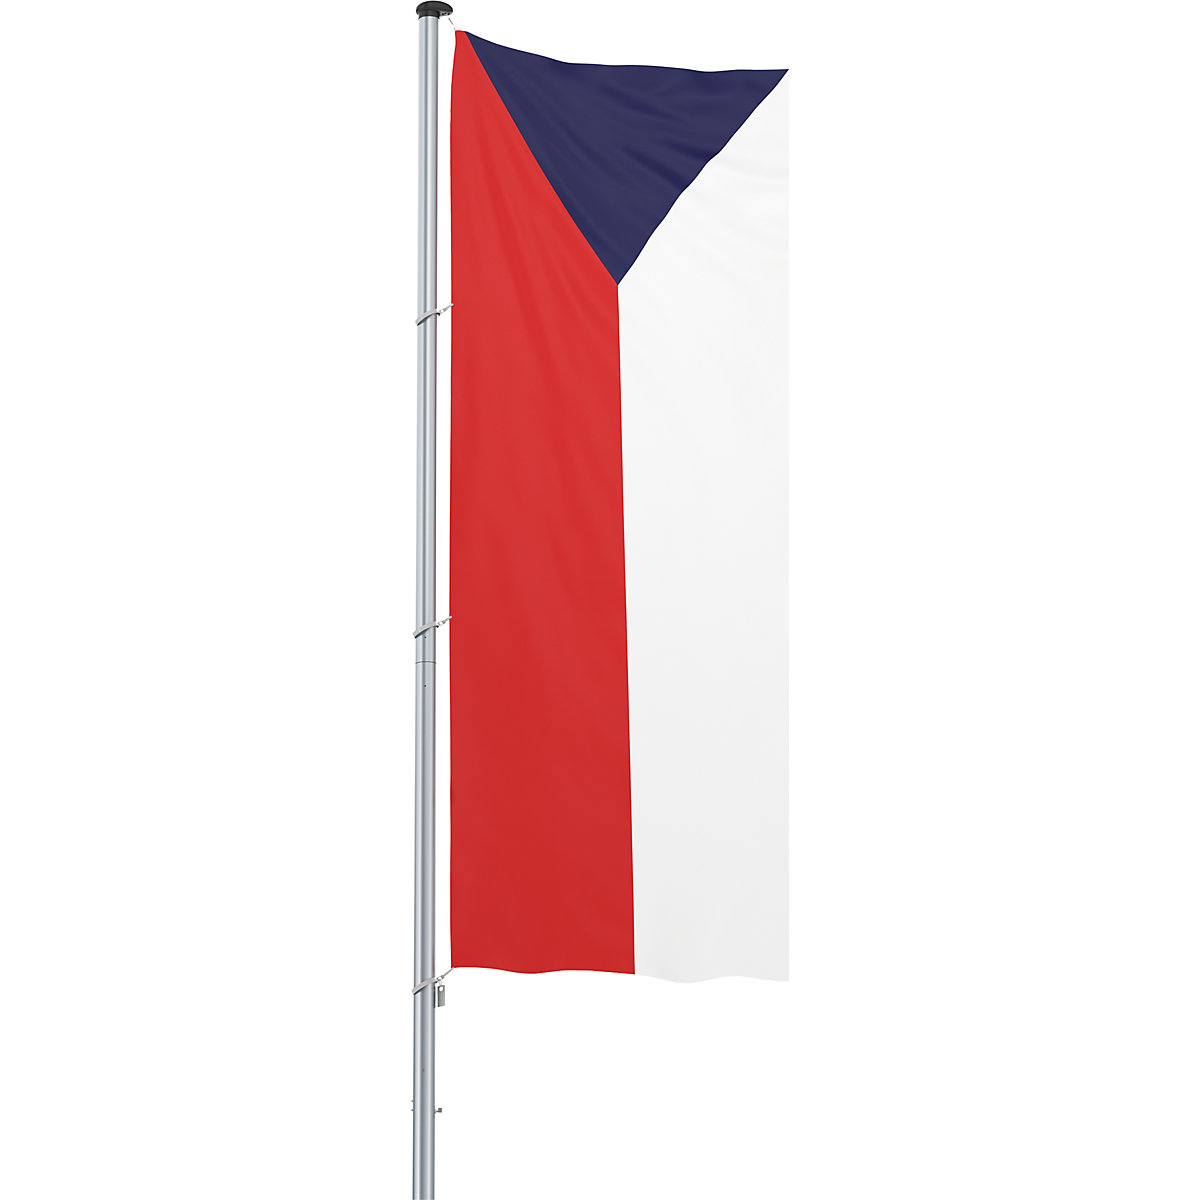 Mannus – Bandera para izar/bandera del país, formato 1,2 x 3 m, República Checa